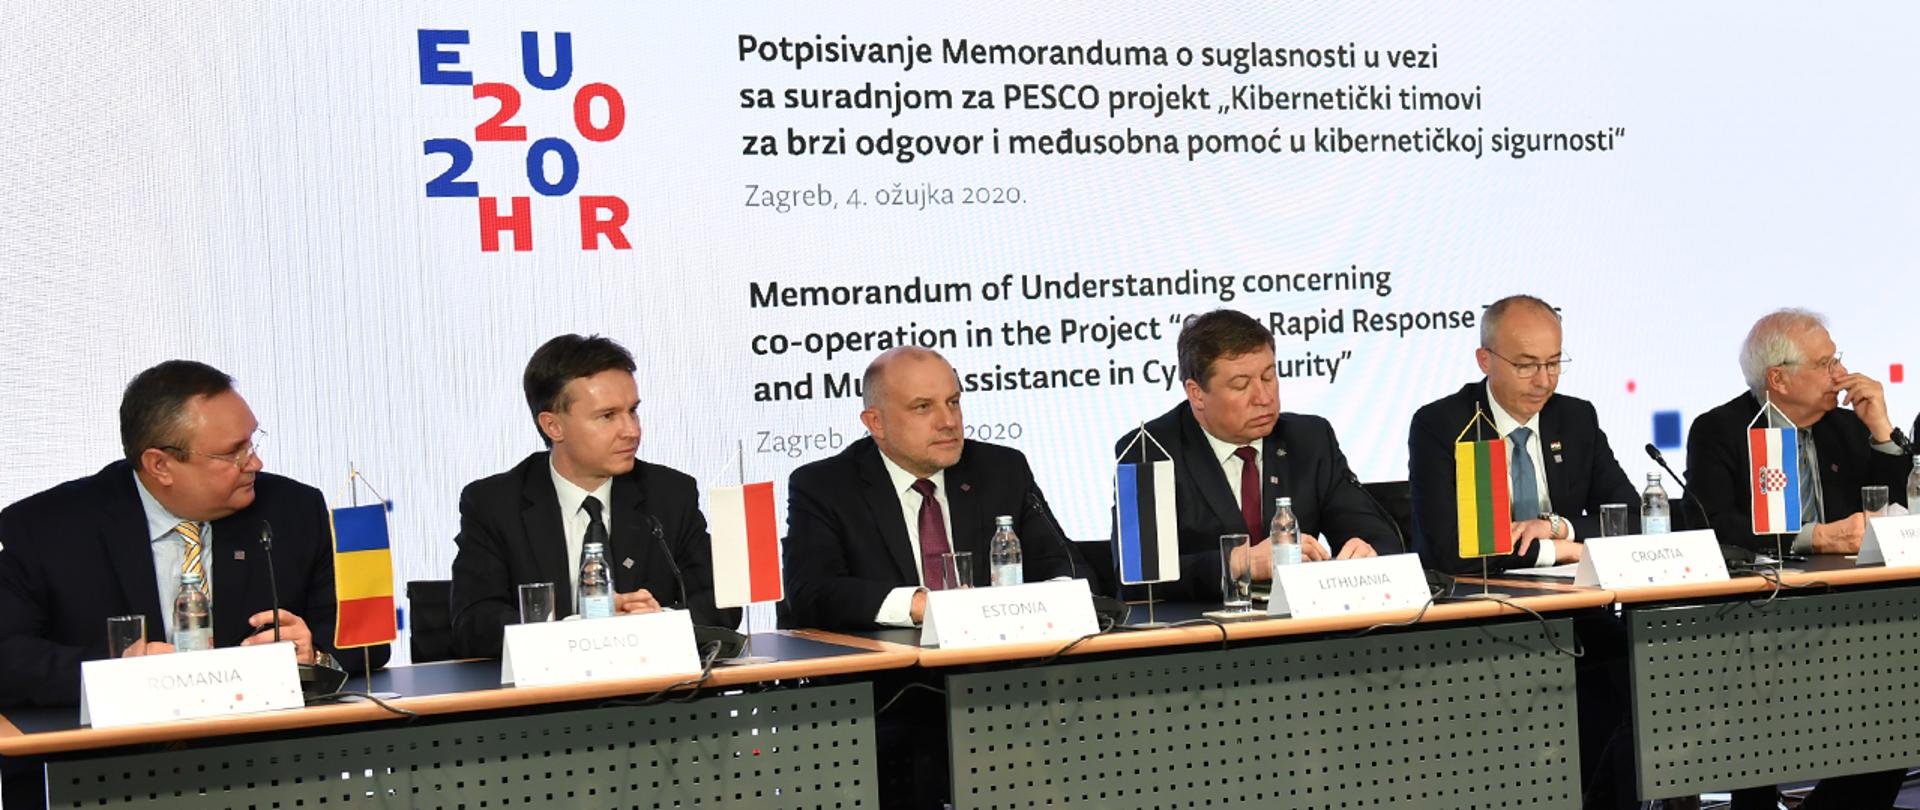 W dniach 4 - 5 marca w Zagrzebiu odbyło się spotkanie ministrów obrony państw UE. Mariusza Błaszczaka, ministra obrony narodowej reprezentował podsekretarz stanu Paweł Woźny. 